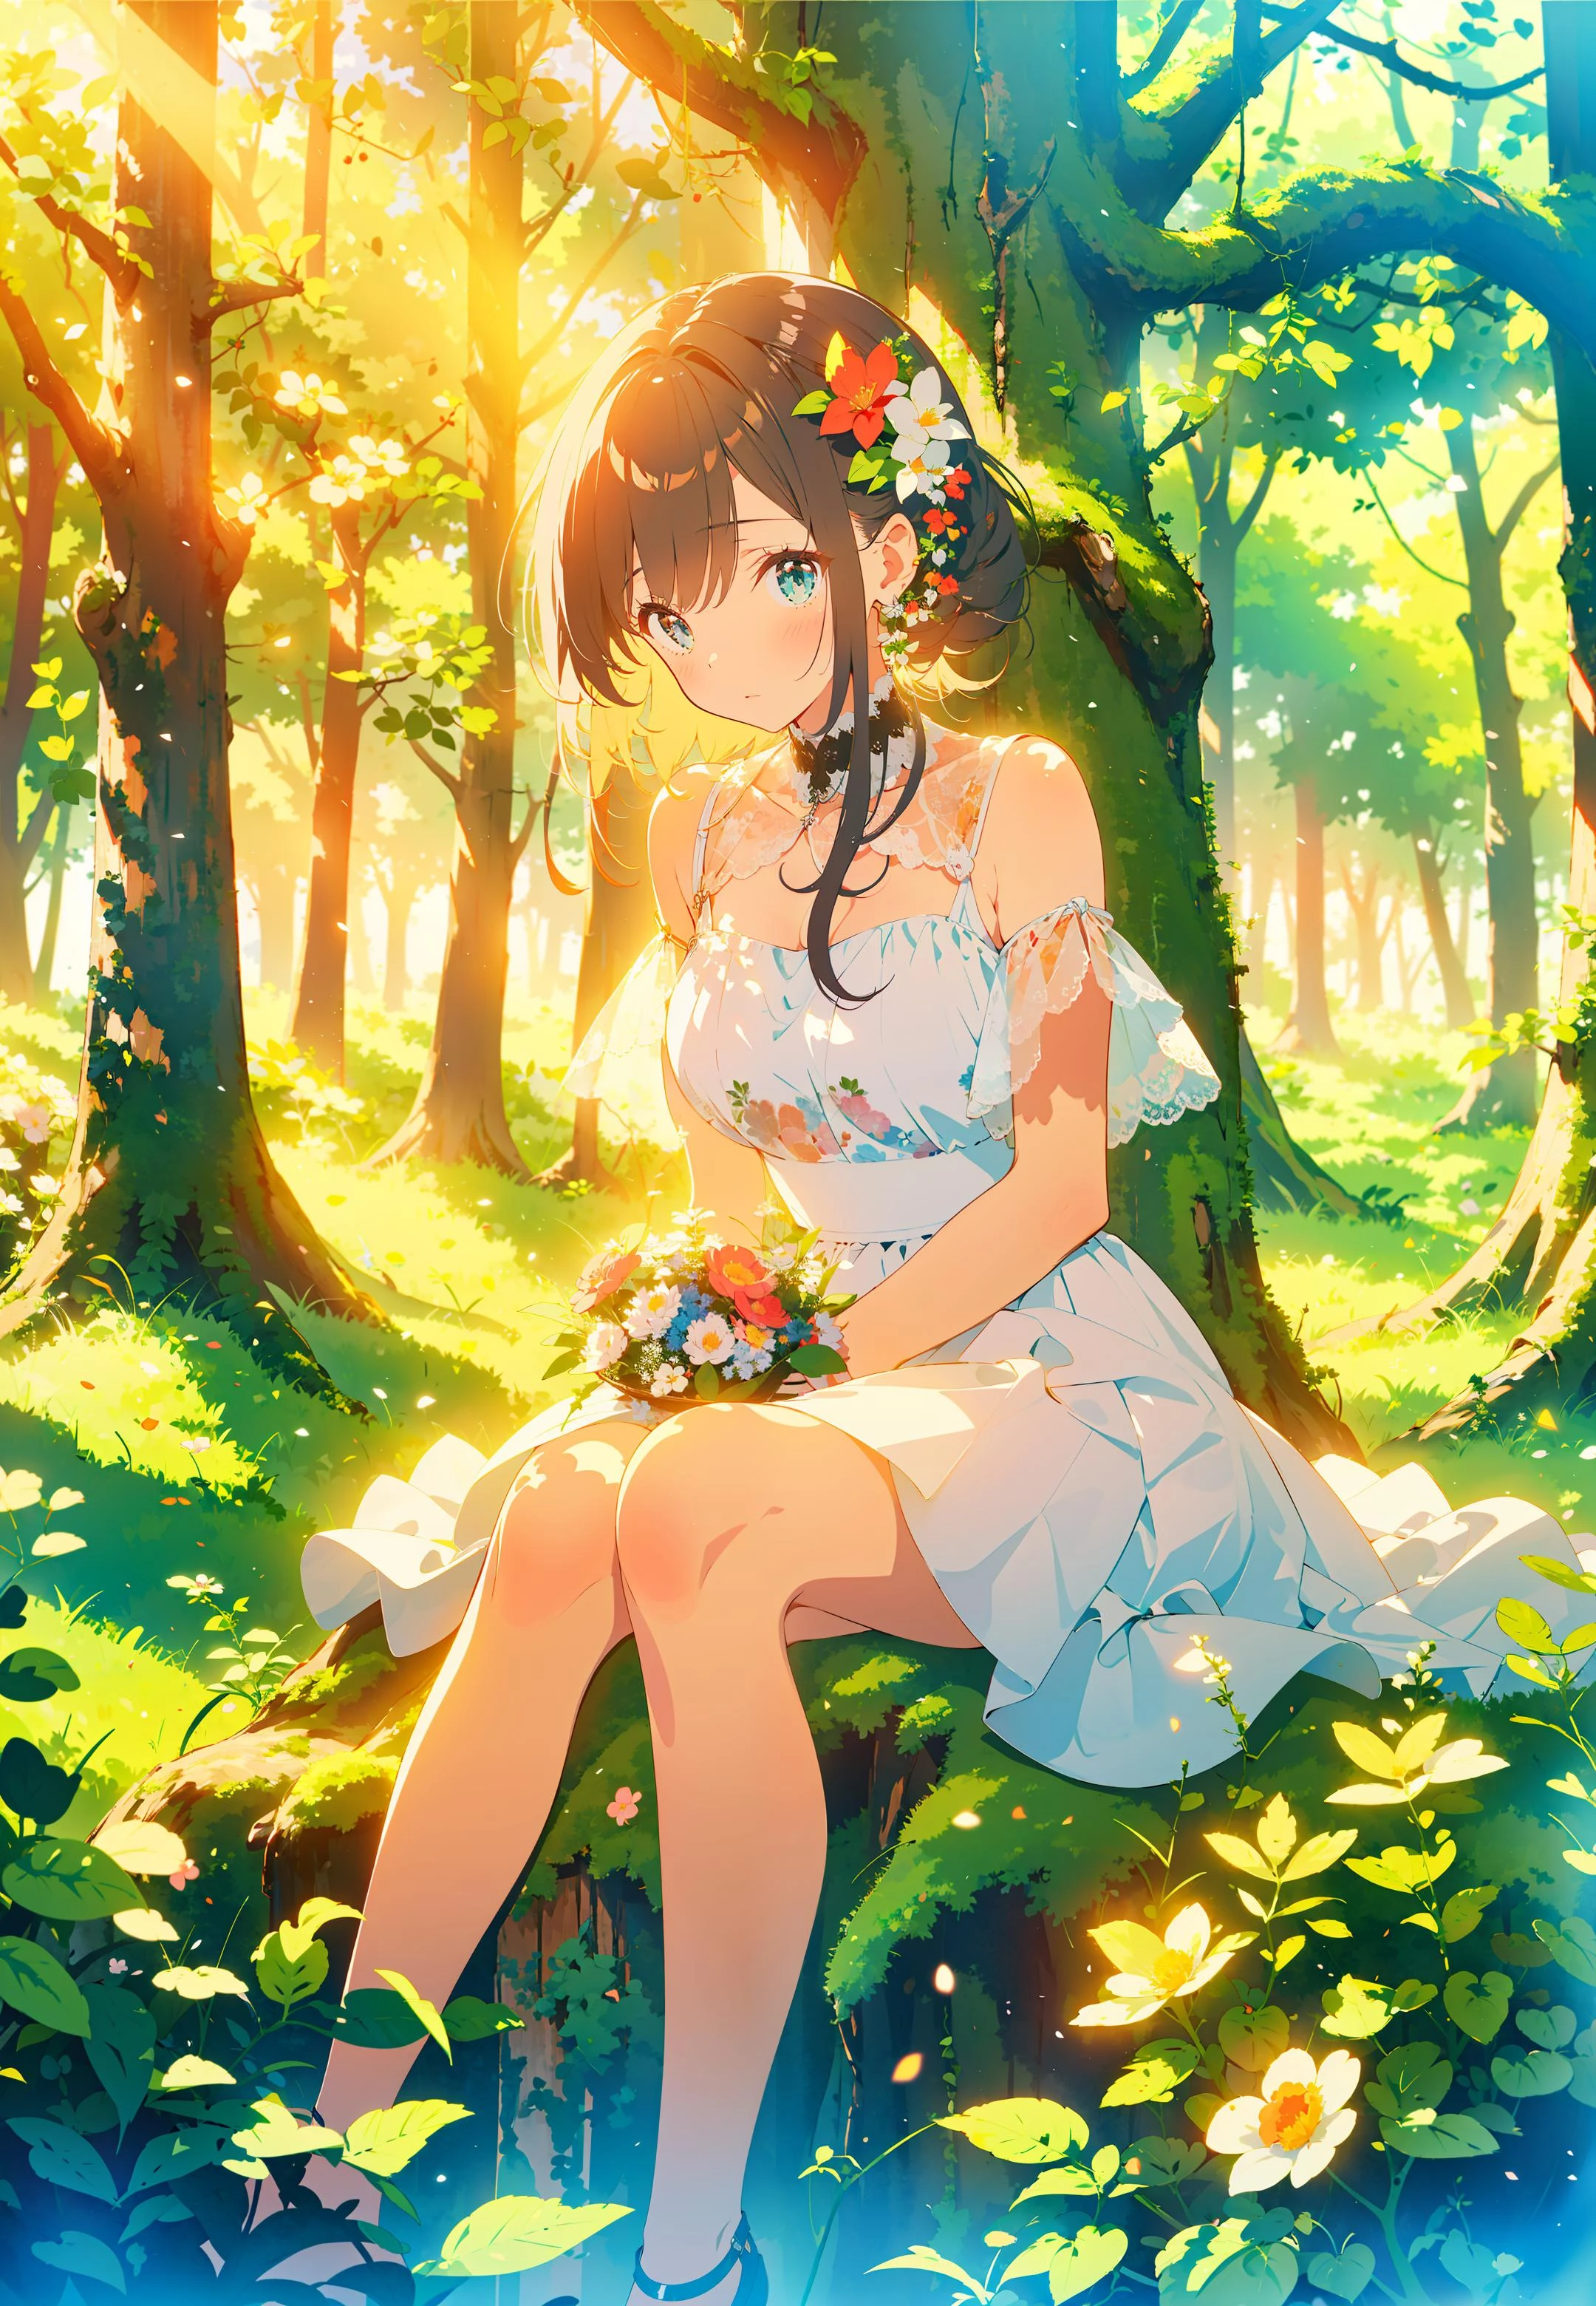 傑作,最好的品質,1个女孩, 坐在草地上, 花朵, holding 花朵, 溫暖的燈光, 白色禮服, 前景模糊, (森林:1.5)